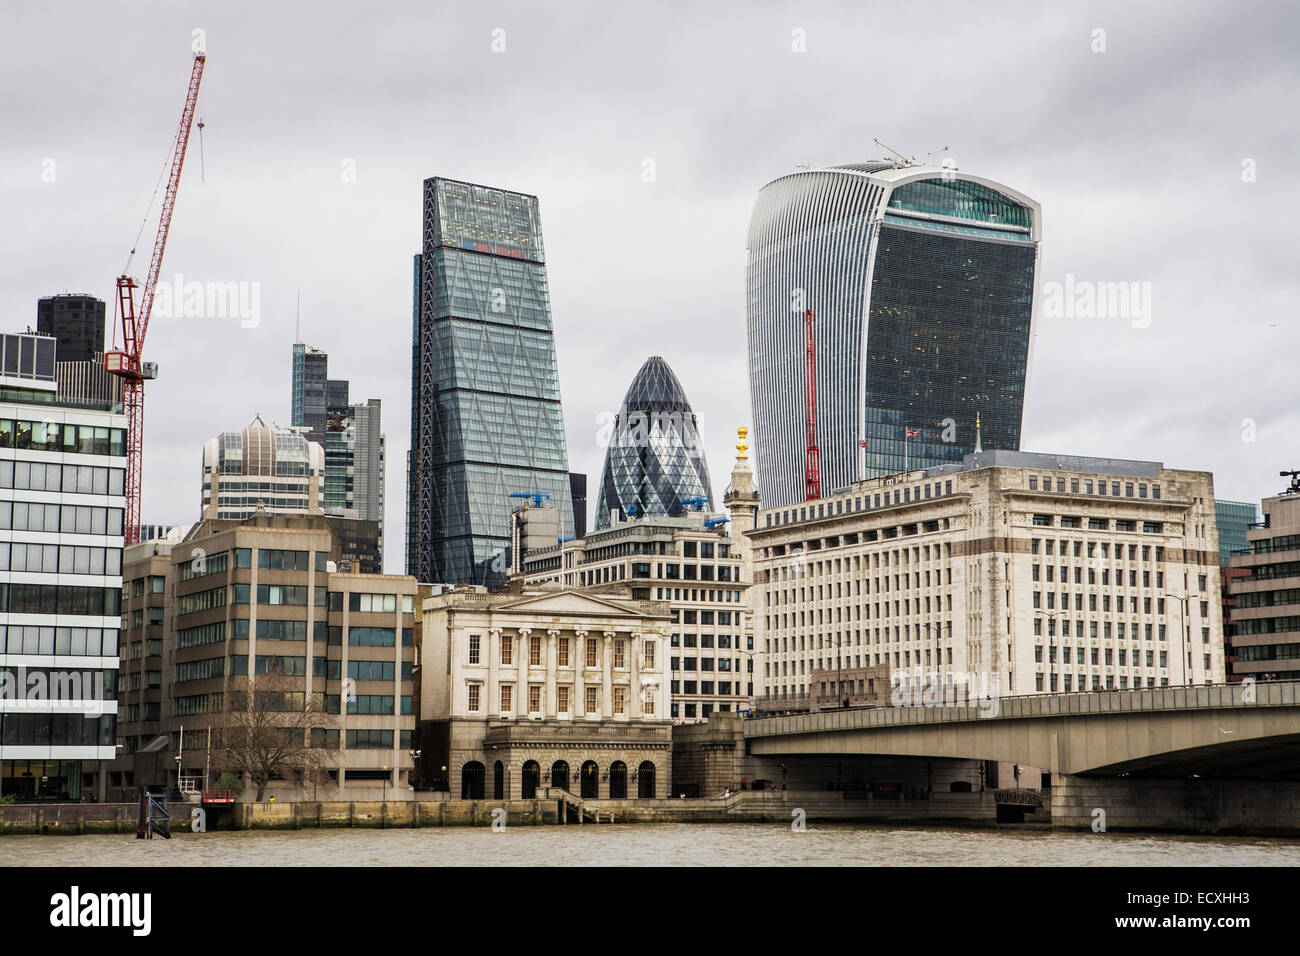 La città di Londra: il grattacielo Cheesegrater, il cetriolino e edificio Walkie-Talkie: architettura & edifici in vetro Foto Stock